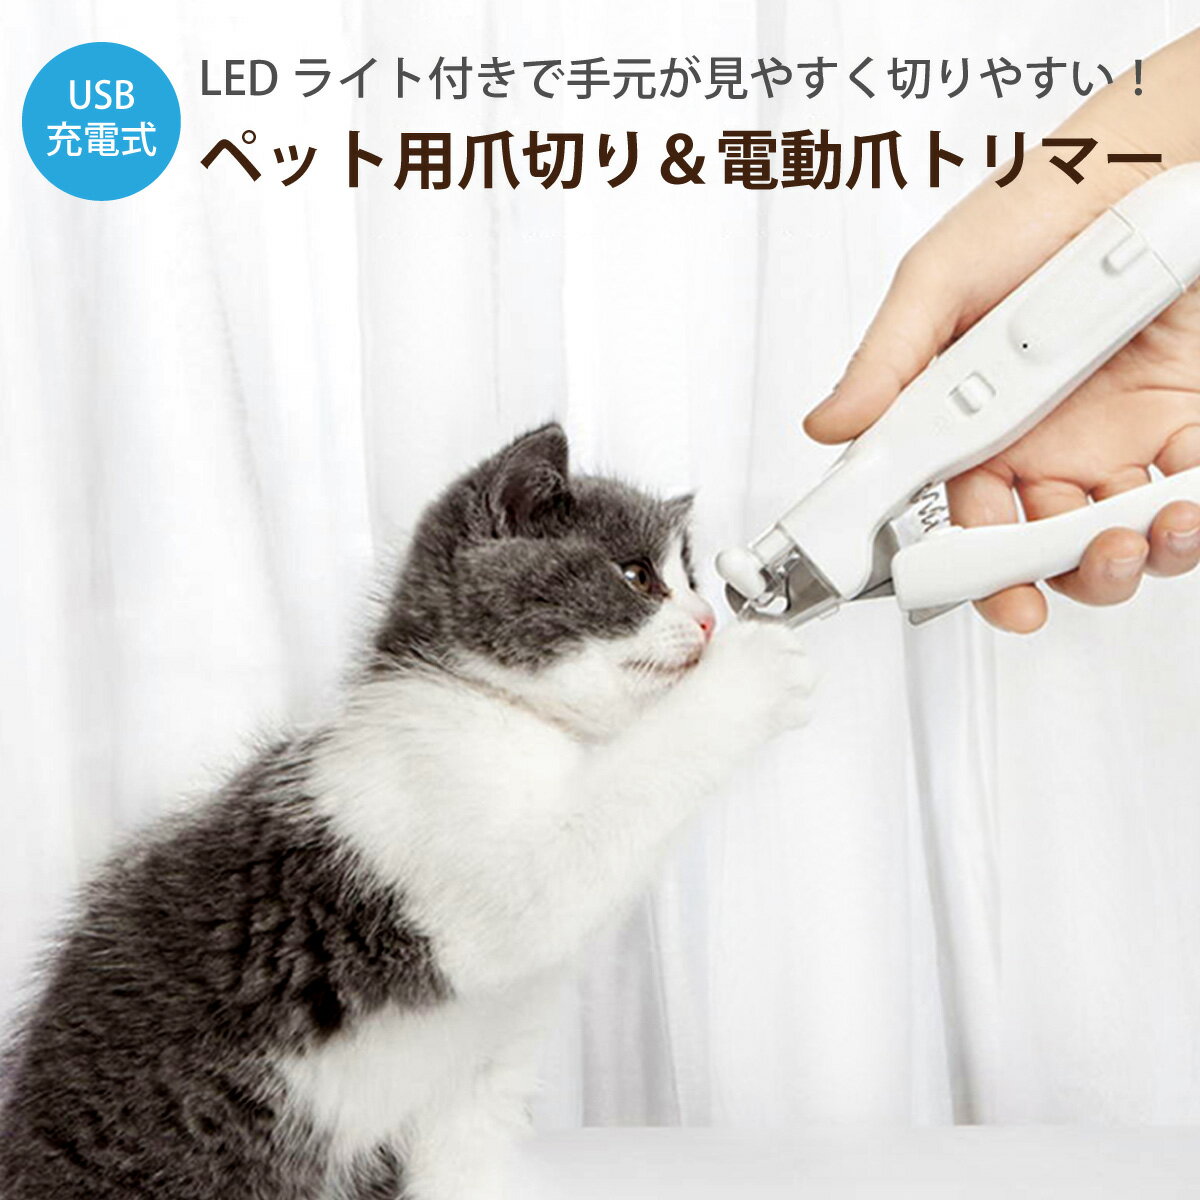 ペット用 爪切り 電動爪トリマー 犬用 電動爪やすり 電動ネイルヤスリ LEDライト付き USB充電式 爪きり いぬ ネコ 犬 猫 小型犬 中型犬 pet-n-clippers